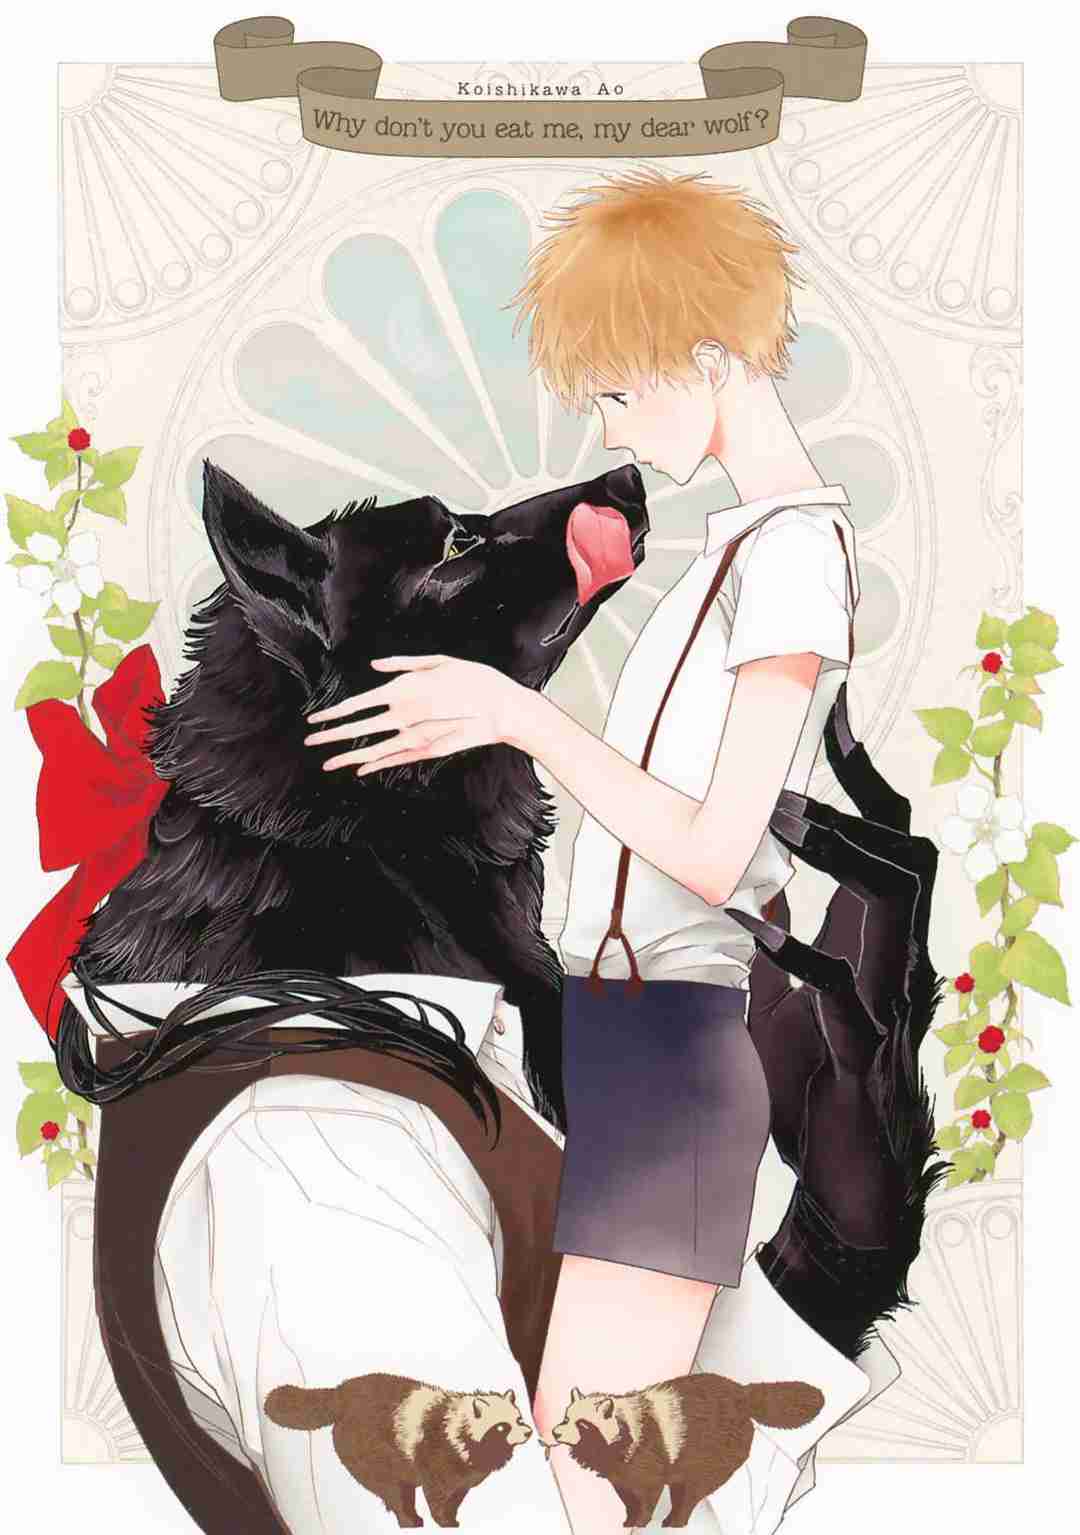 Tabenai No? Ookami san Vol. 1 Ch. 1 The Wolfman and the Boy